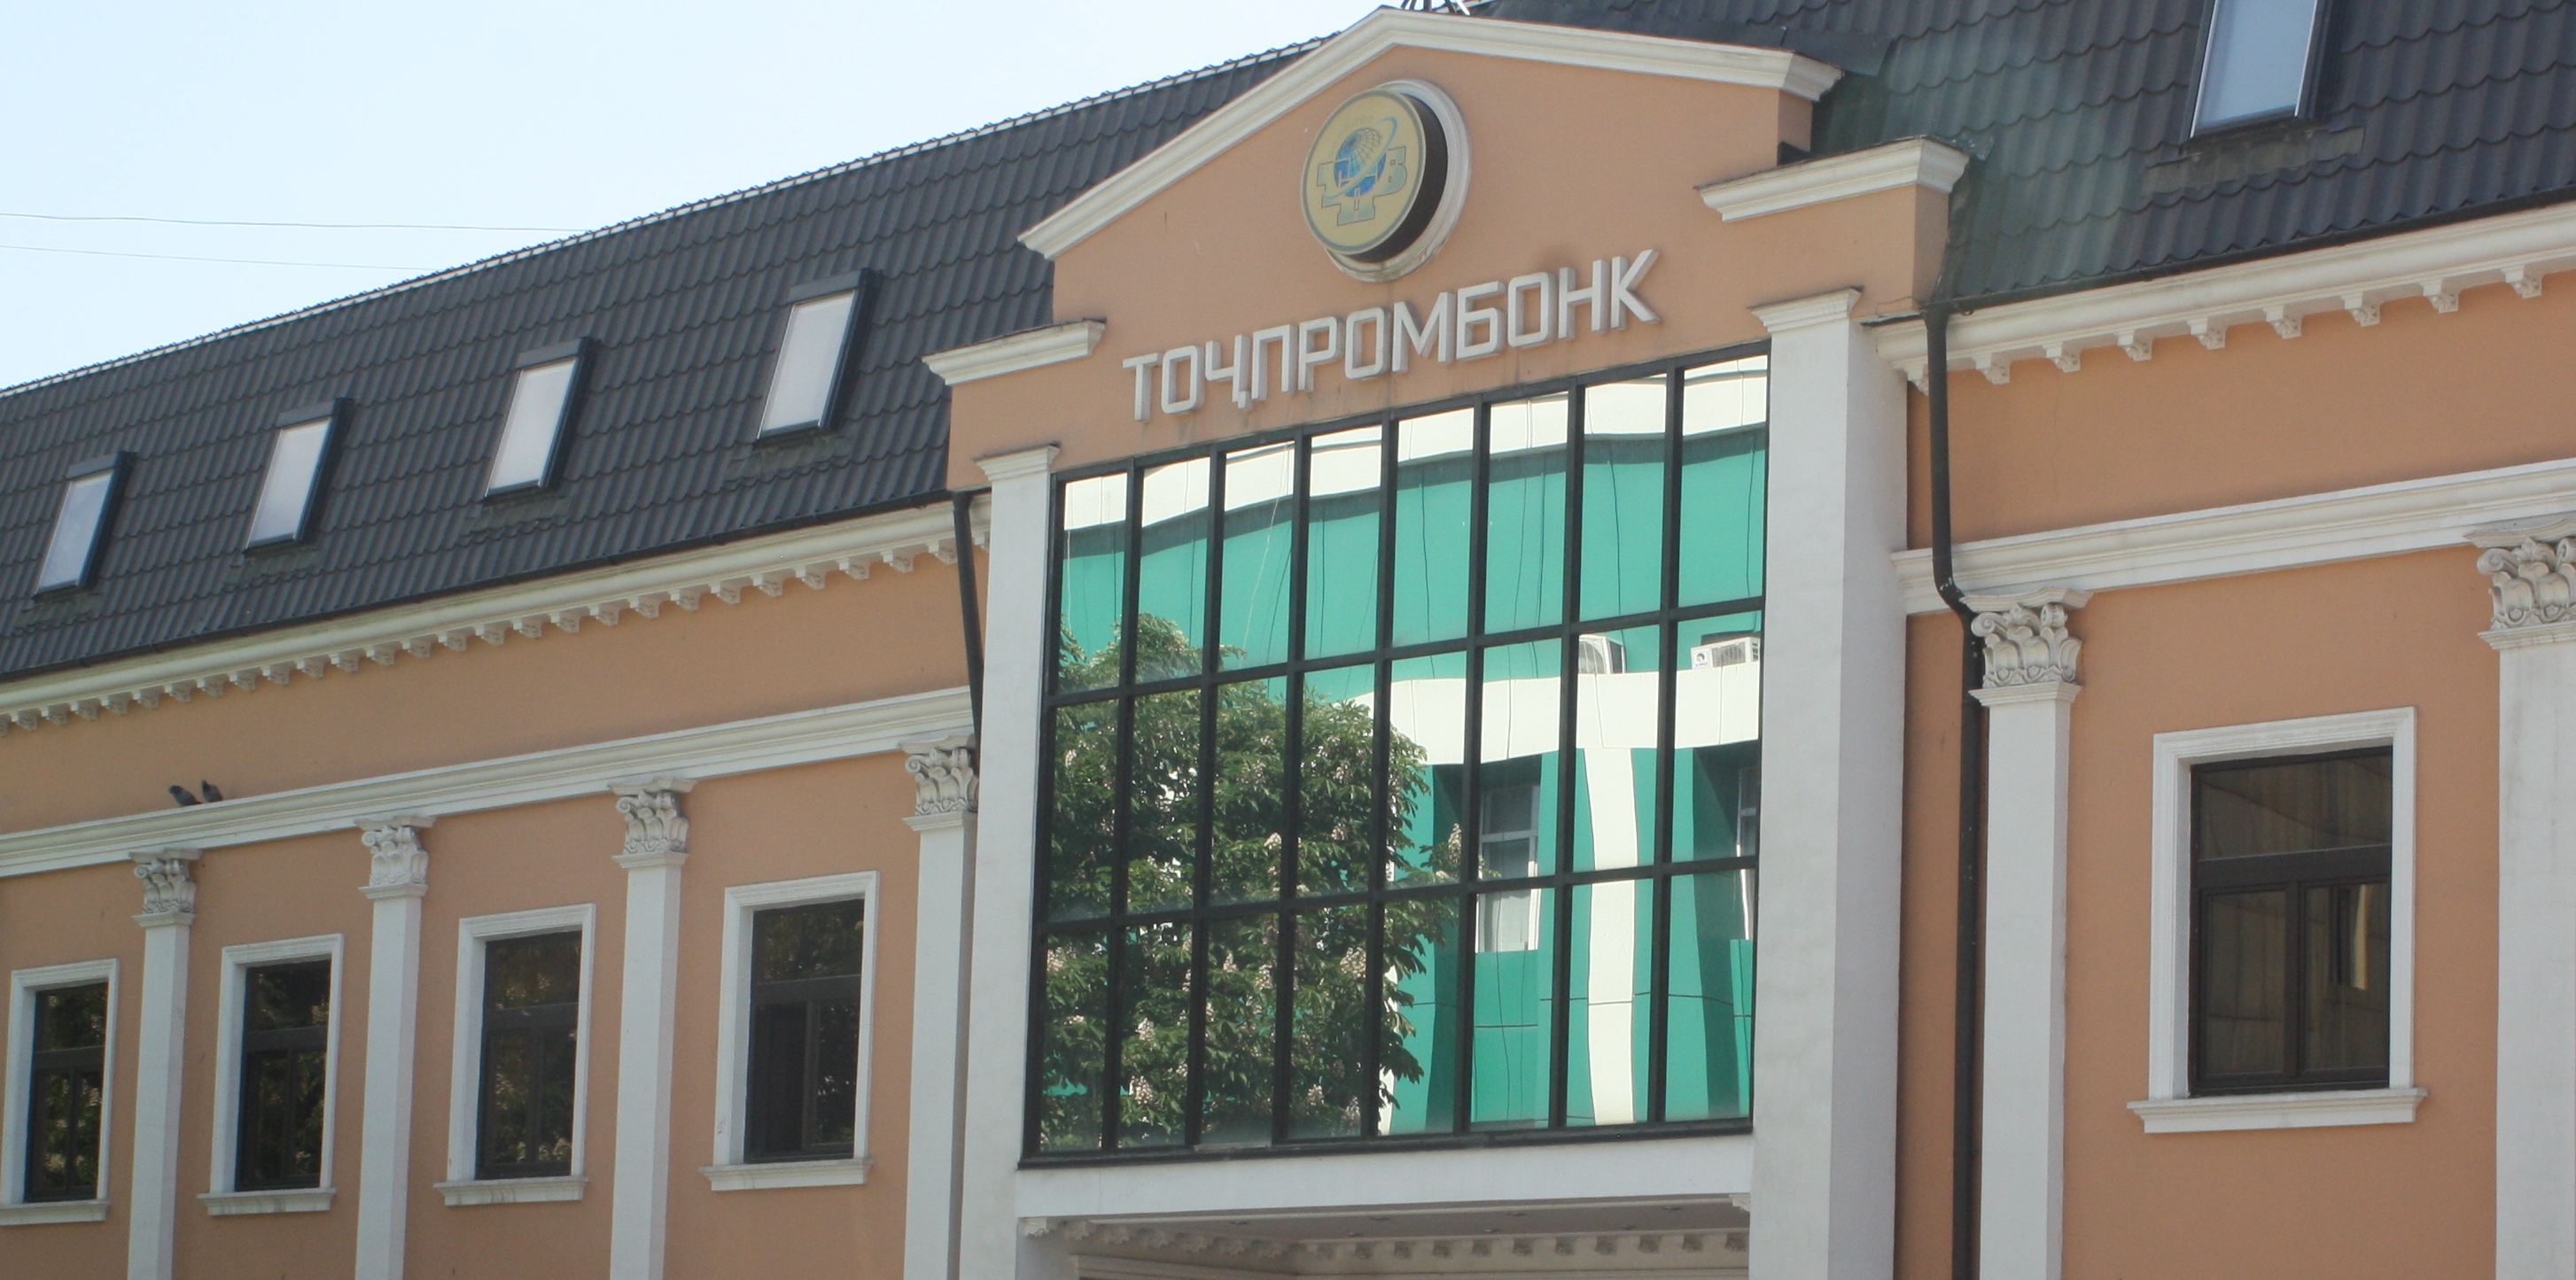 Руководство подразделения «Таджпромбанка» присвоили себе 200 тысяч долларов клиентов